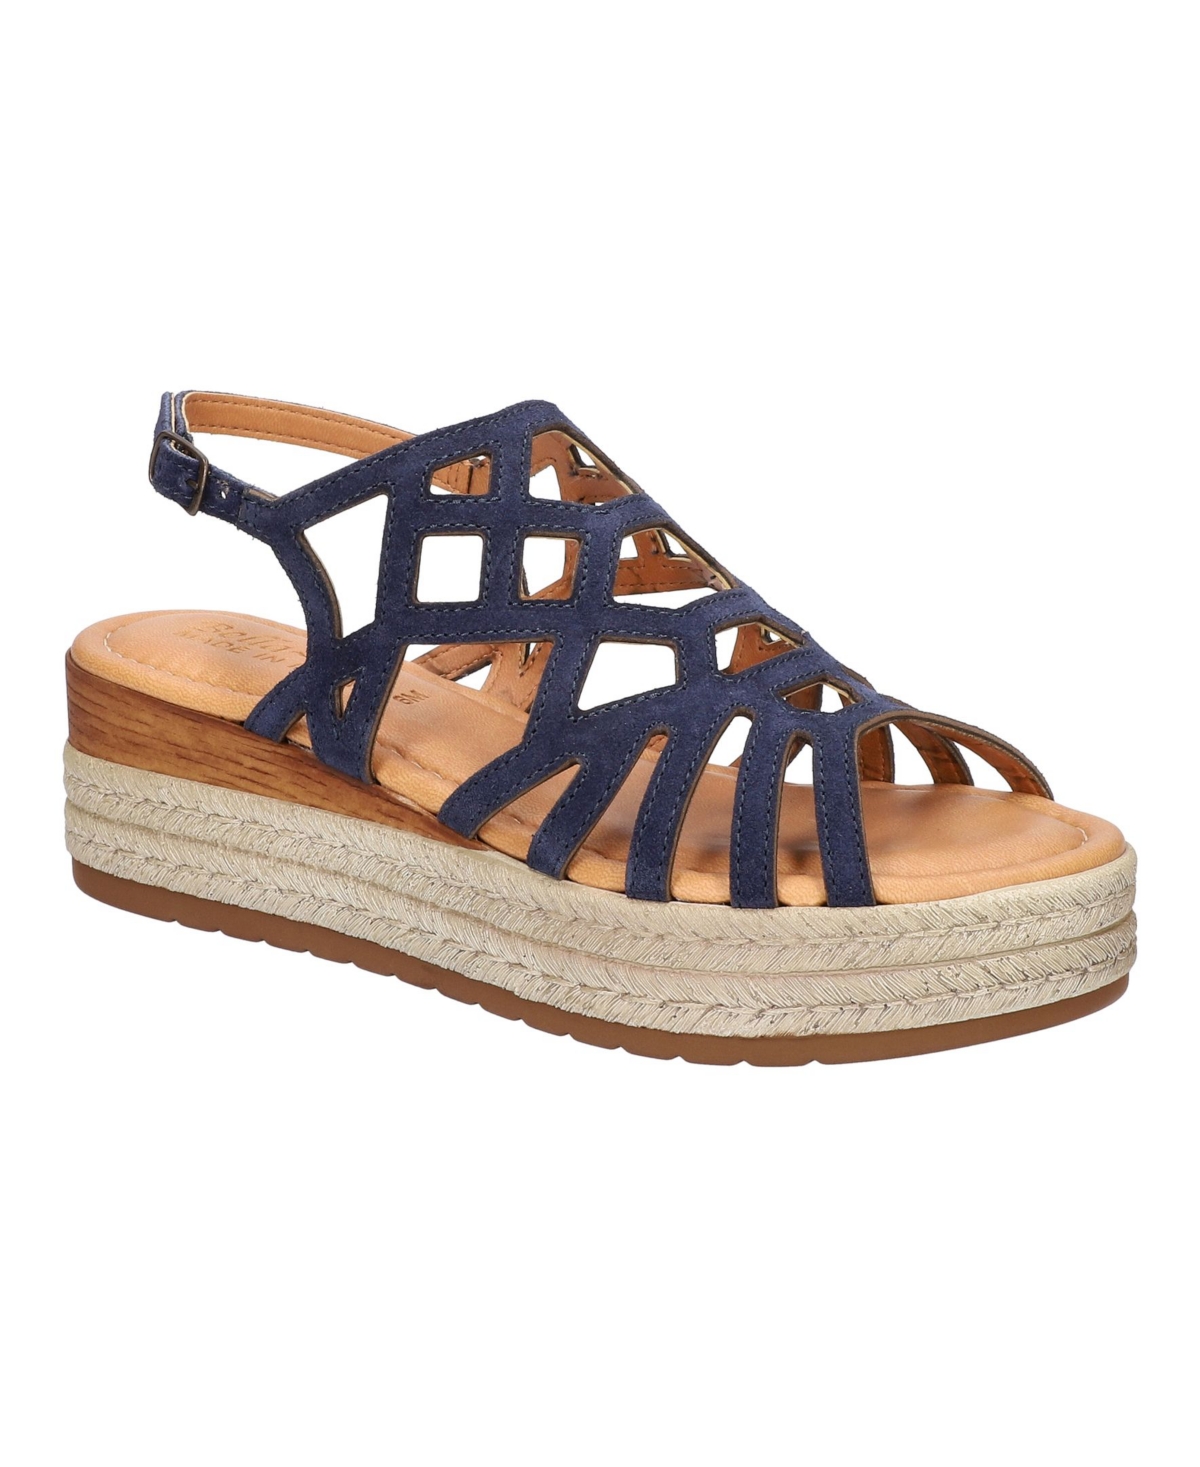 Shop Bella Vita Women's Zip-italy Wedge Sandals In Navy Suede Leather